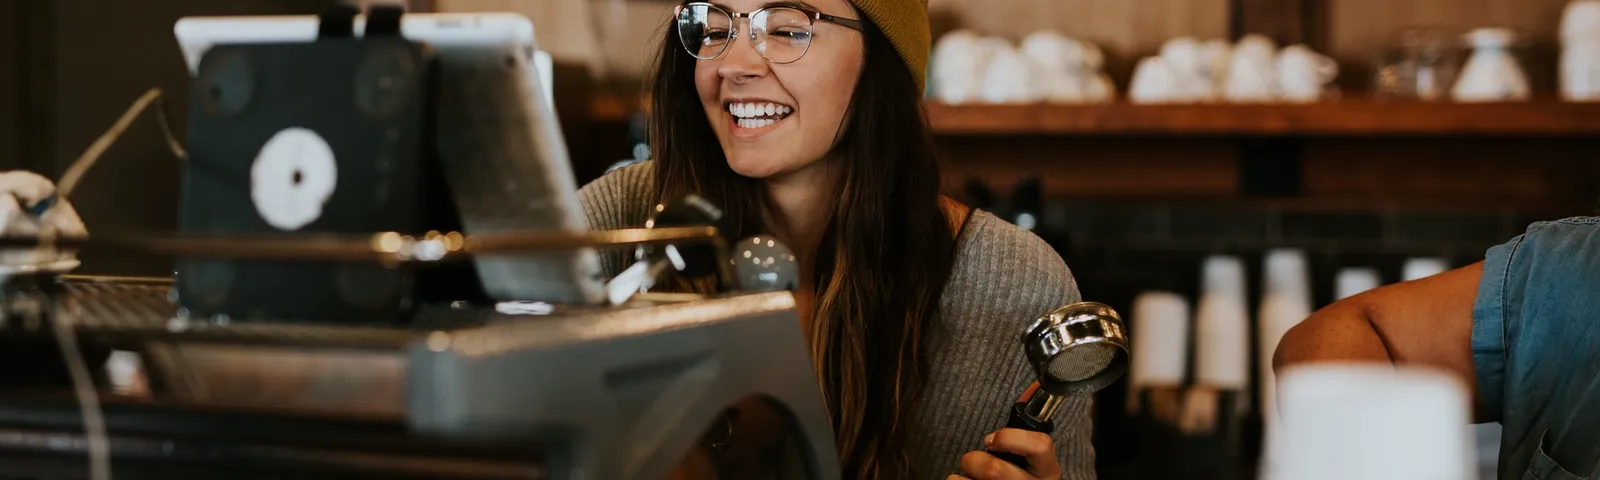 Barista i kaffebar